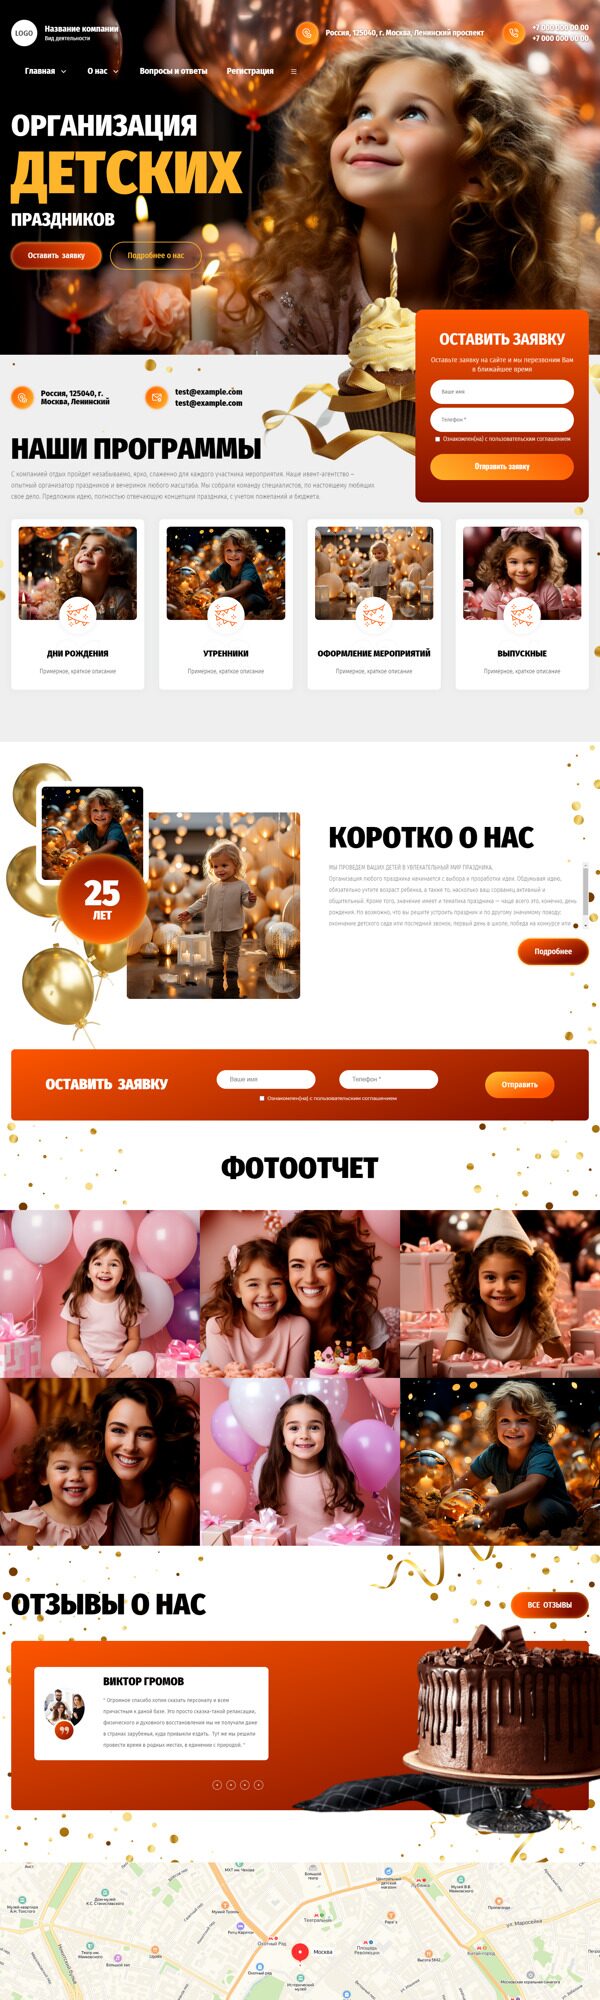 Готовый Сайт-Бизнес № 5180032 - Сайт для организации детских праздников (Десктопная версия)